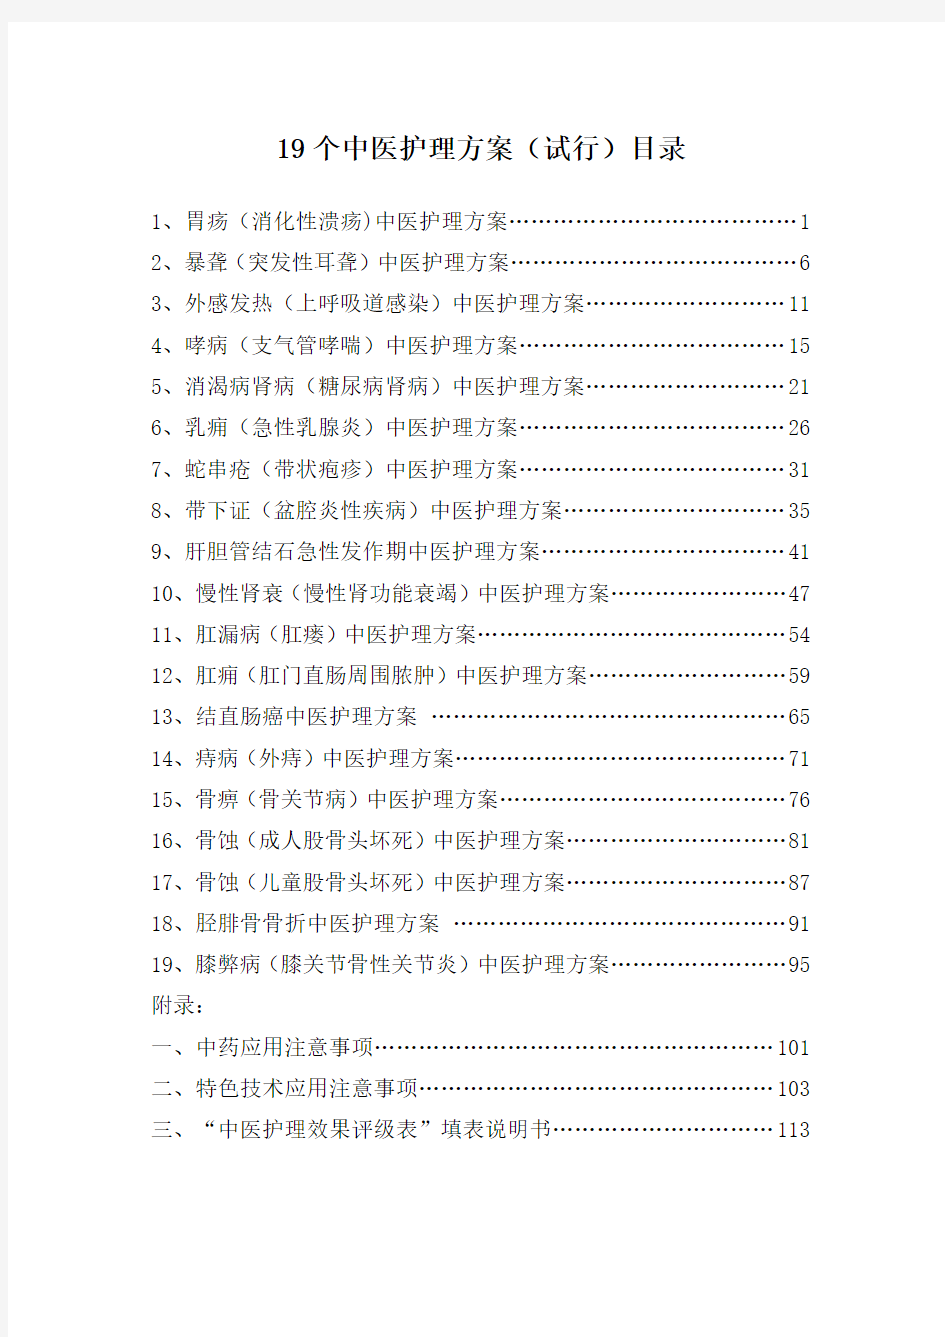 19个中医病种的护理方案(2015年)